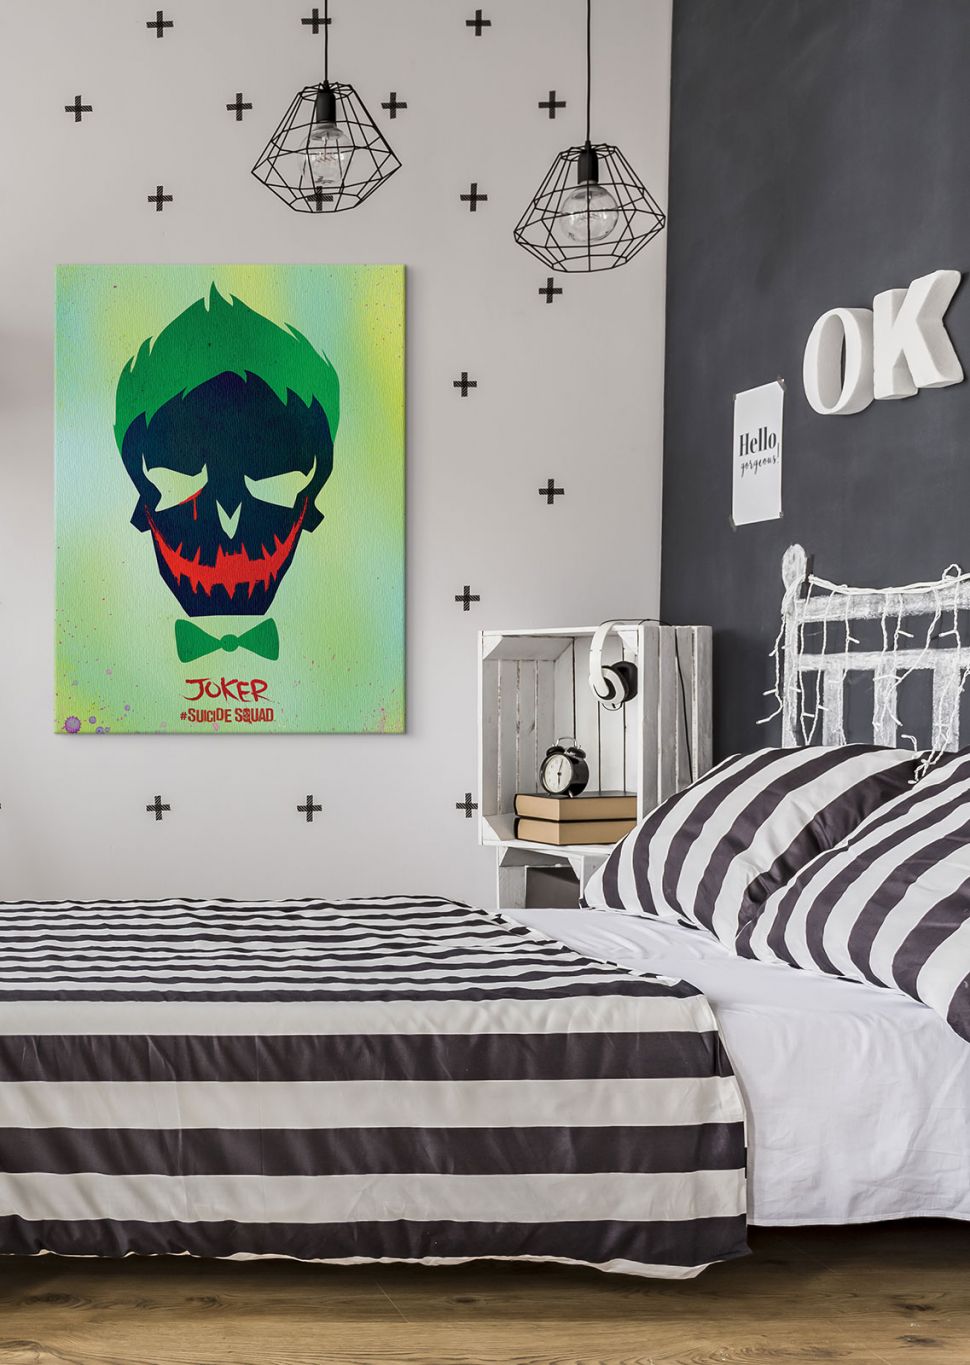 Obraz na płótnie wiszący w sypialni przedstawia podobiznę bohatera filmu Legion Samobójców, Jokera, którego grał Jared Leto